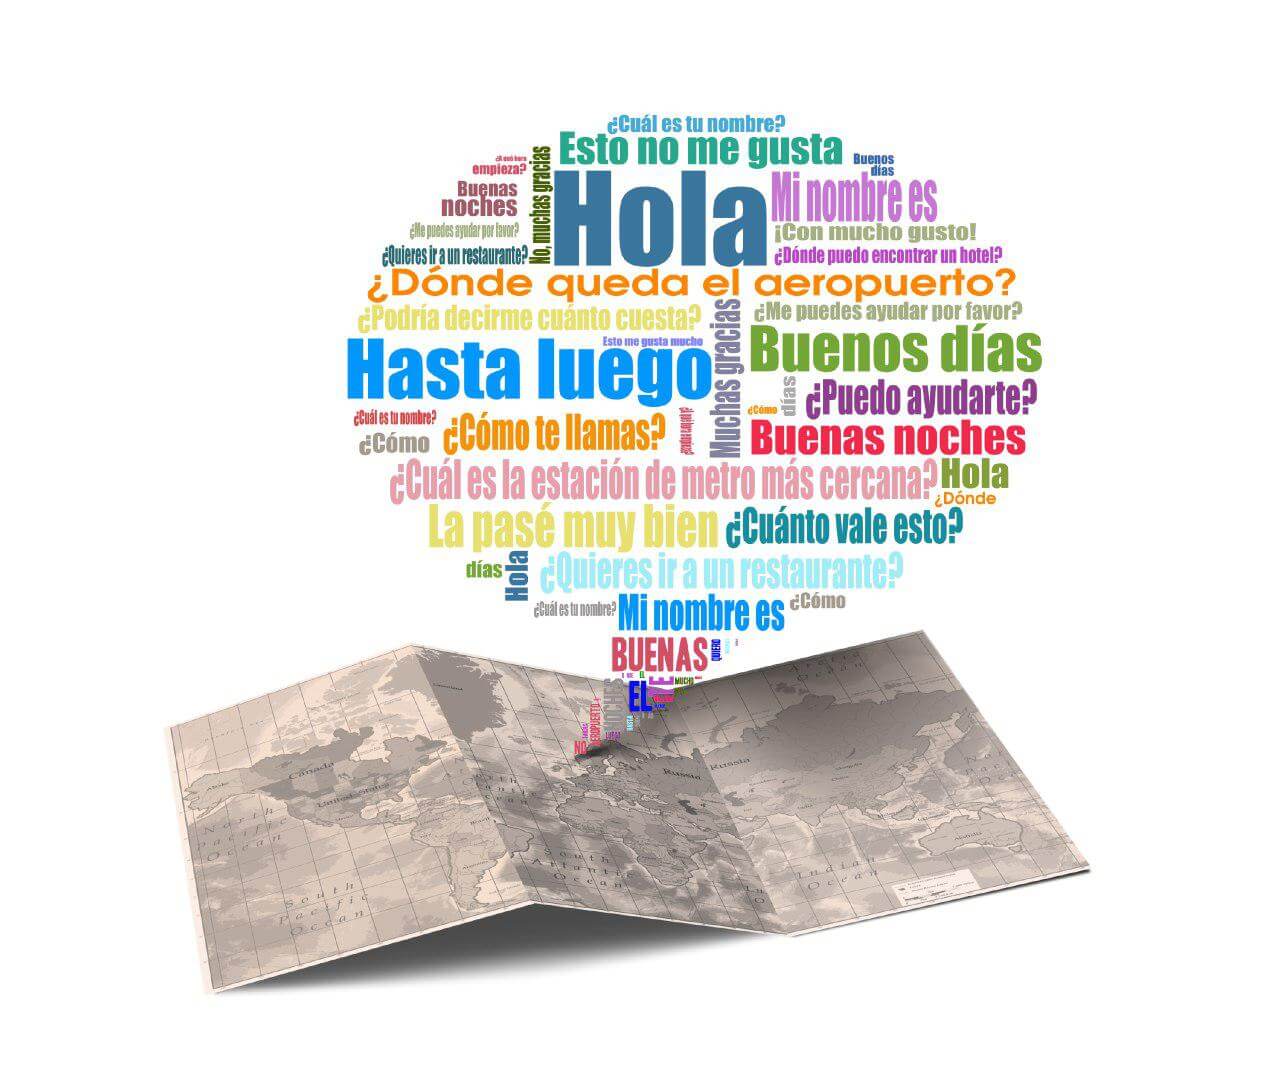 زبان اسپانیایی دارای چه لهجه هایی می باشد؟